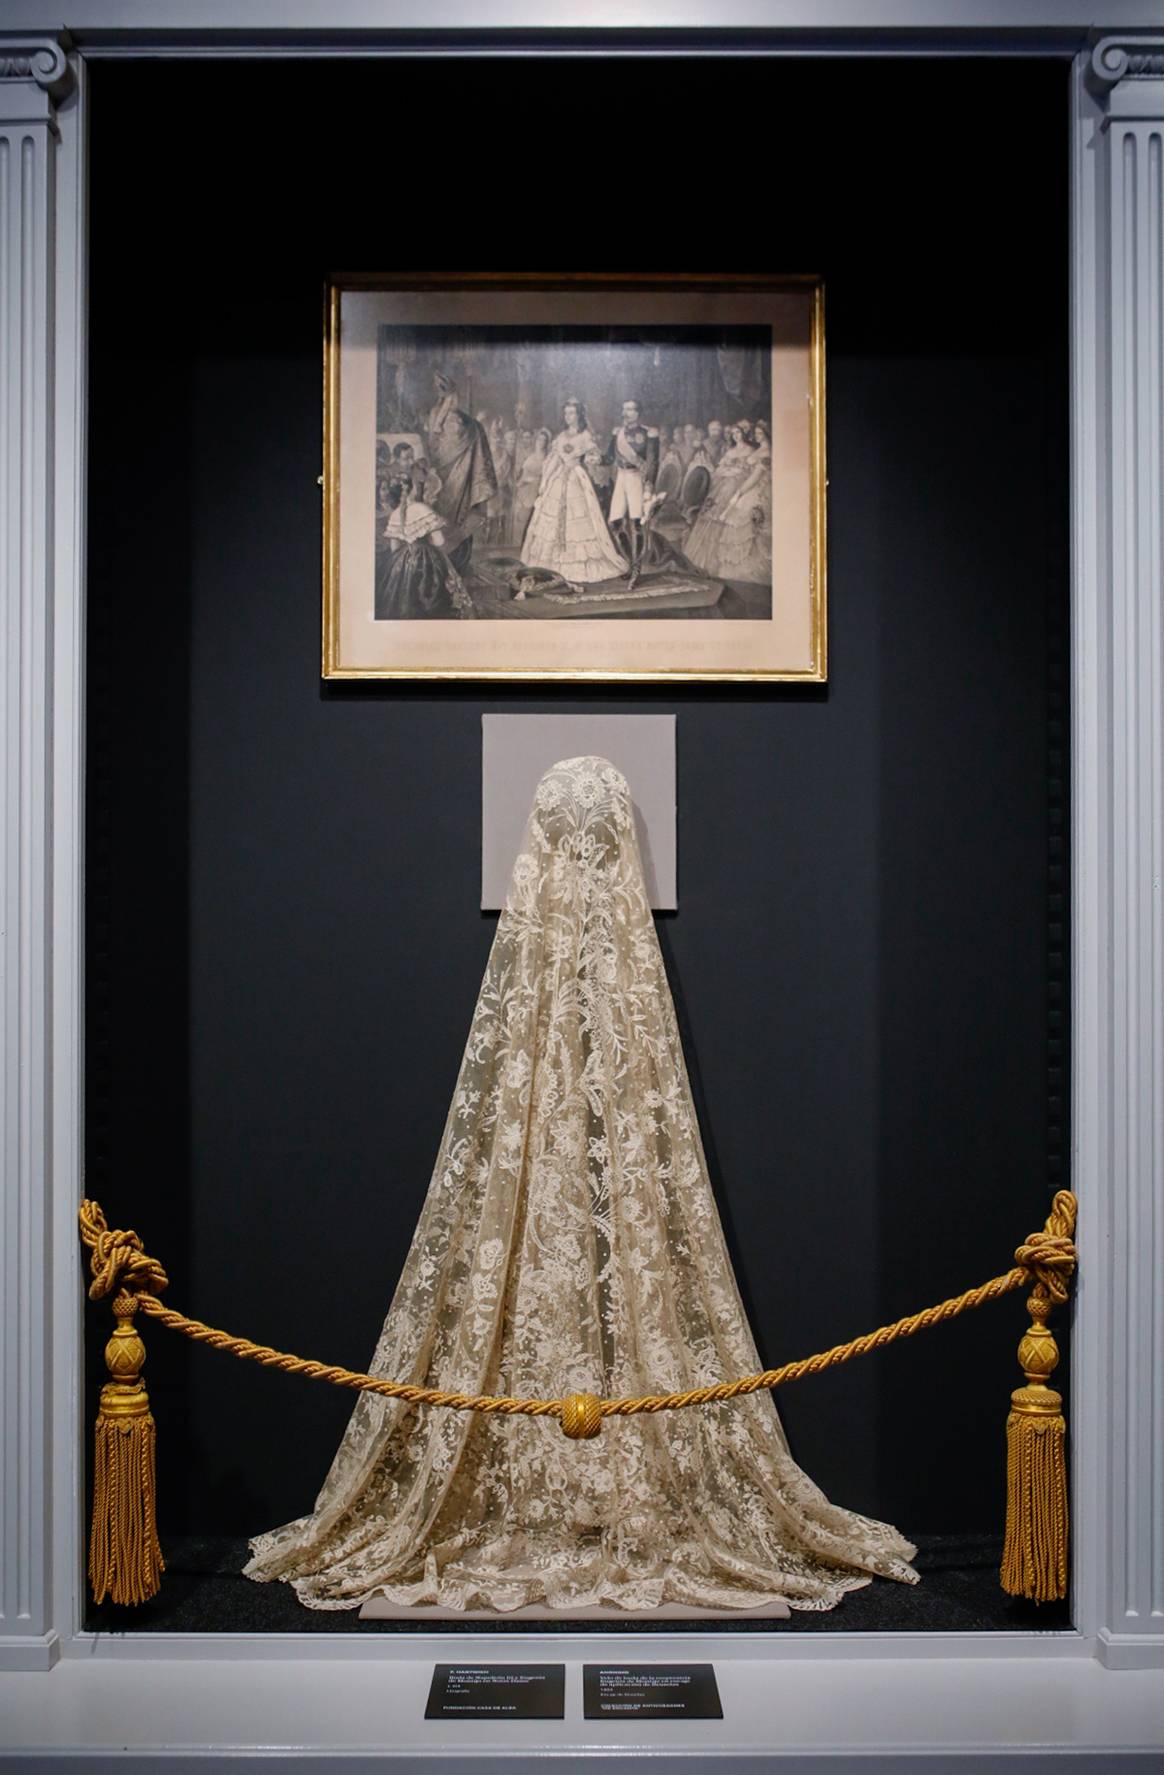 Interior de la exposición “La moda en la Casa de Alba”, en el Palacio de Liria de Madrid del 19 de octubre de 2023 al 31 de marzo de 2024.